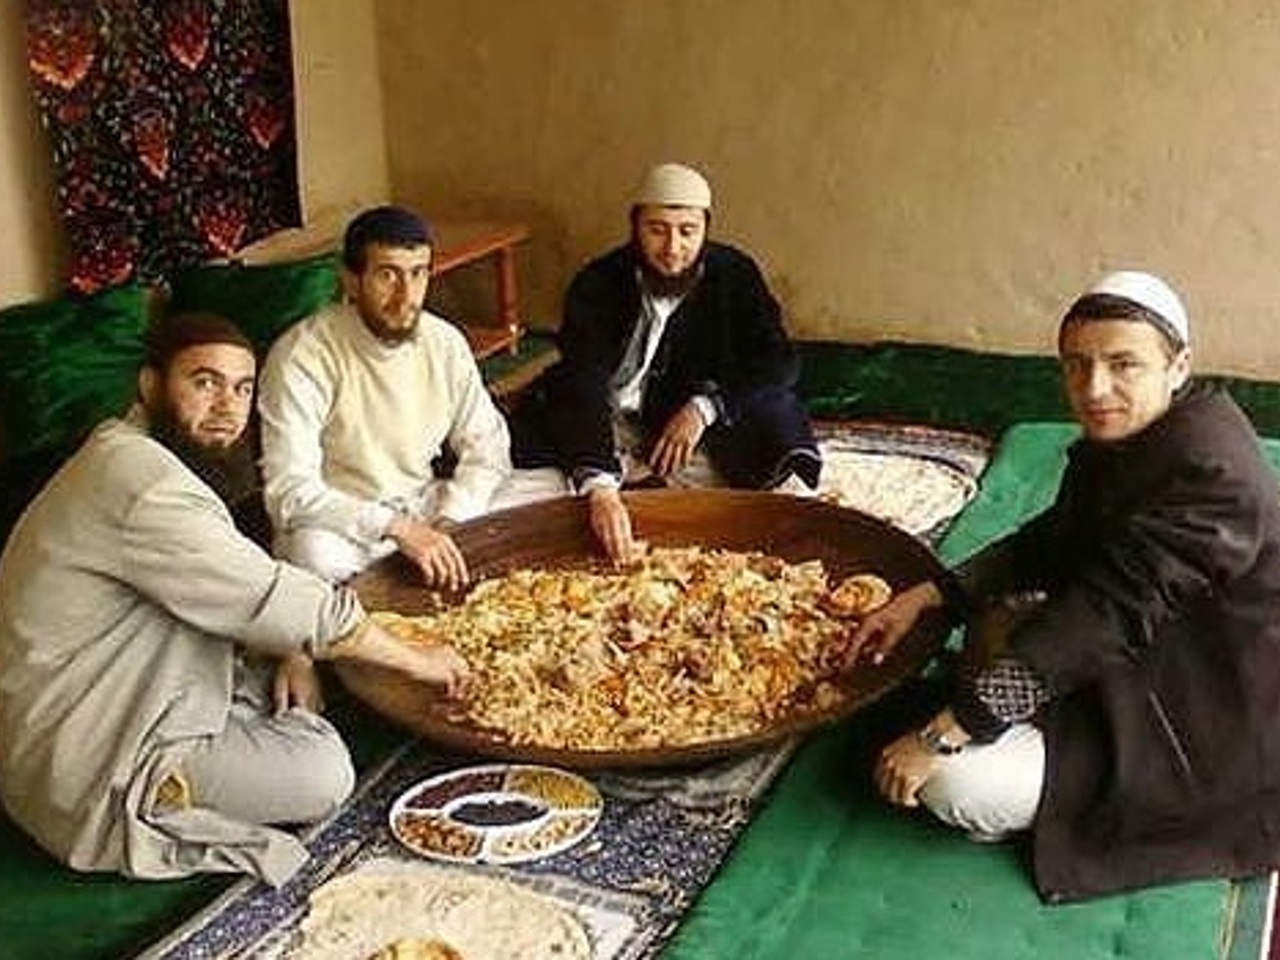 10 по таджикски. Узбеки едят плов. Узбеки едят плов на полу. Узбеки едят на полу. Таджики едят плов.